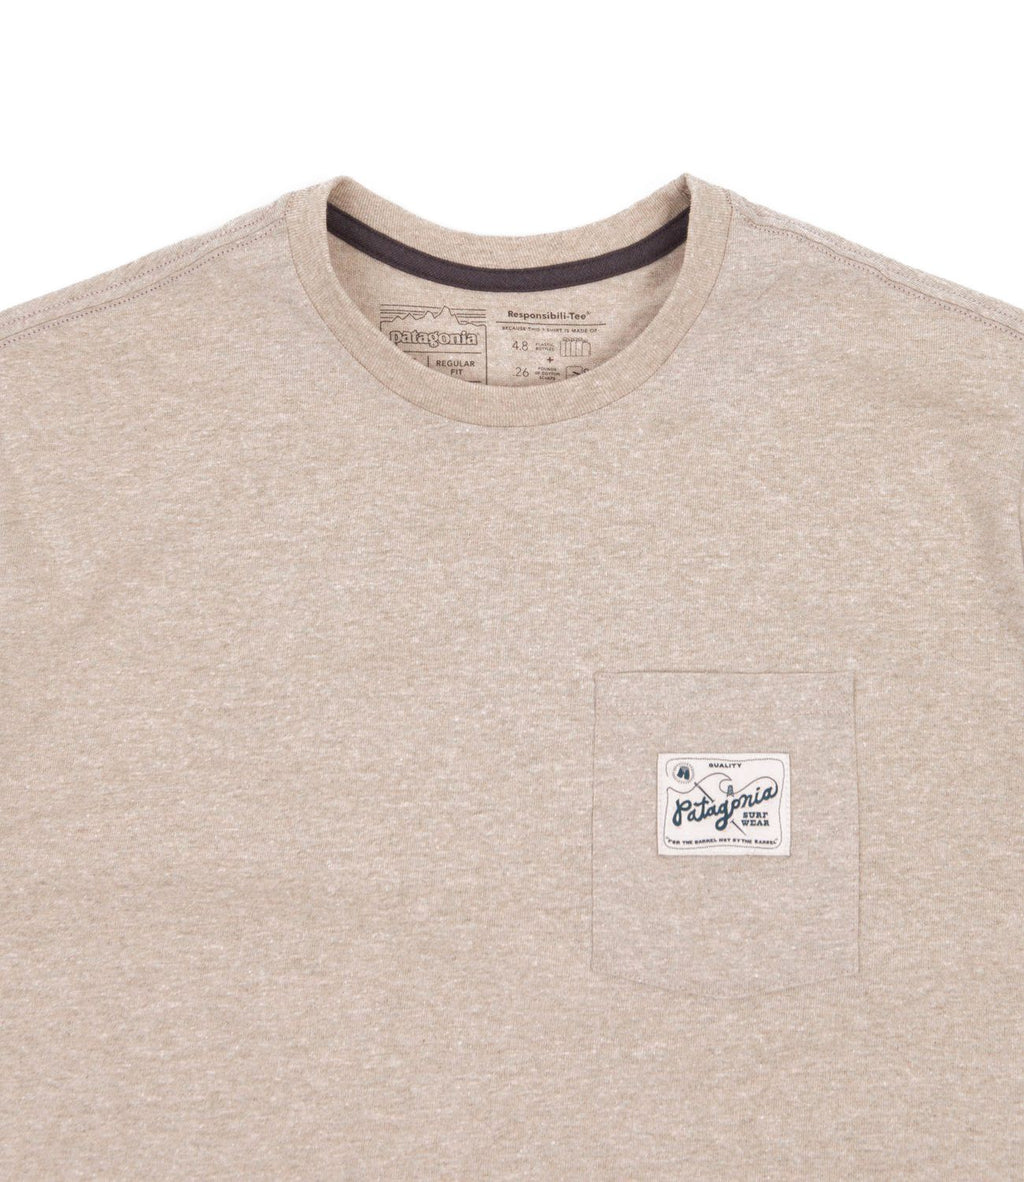  Patagonia T-shirt M's Quality Surf Pocket Responsibili Tee Shroom Taupe Beige Uomo - 3